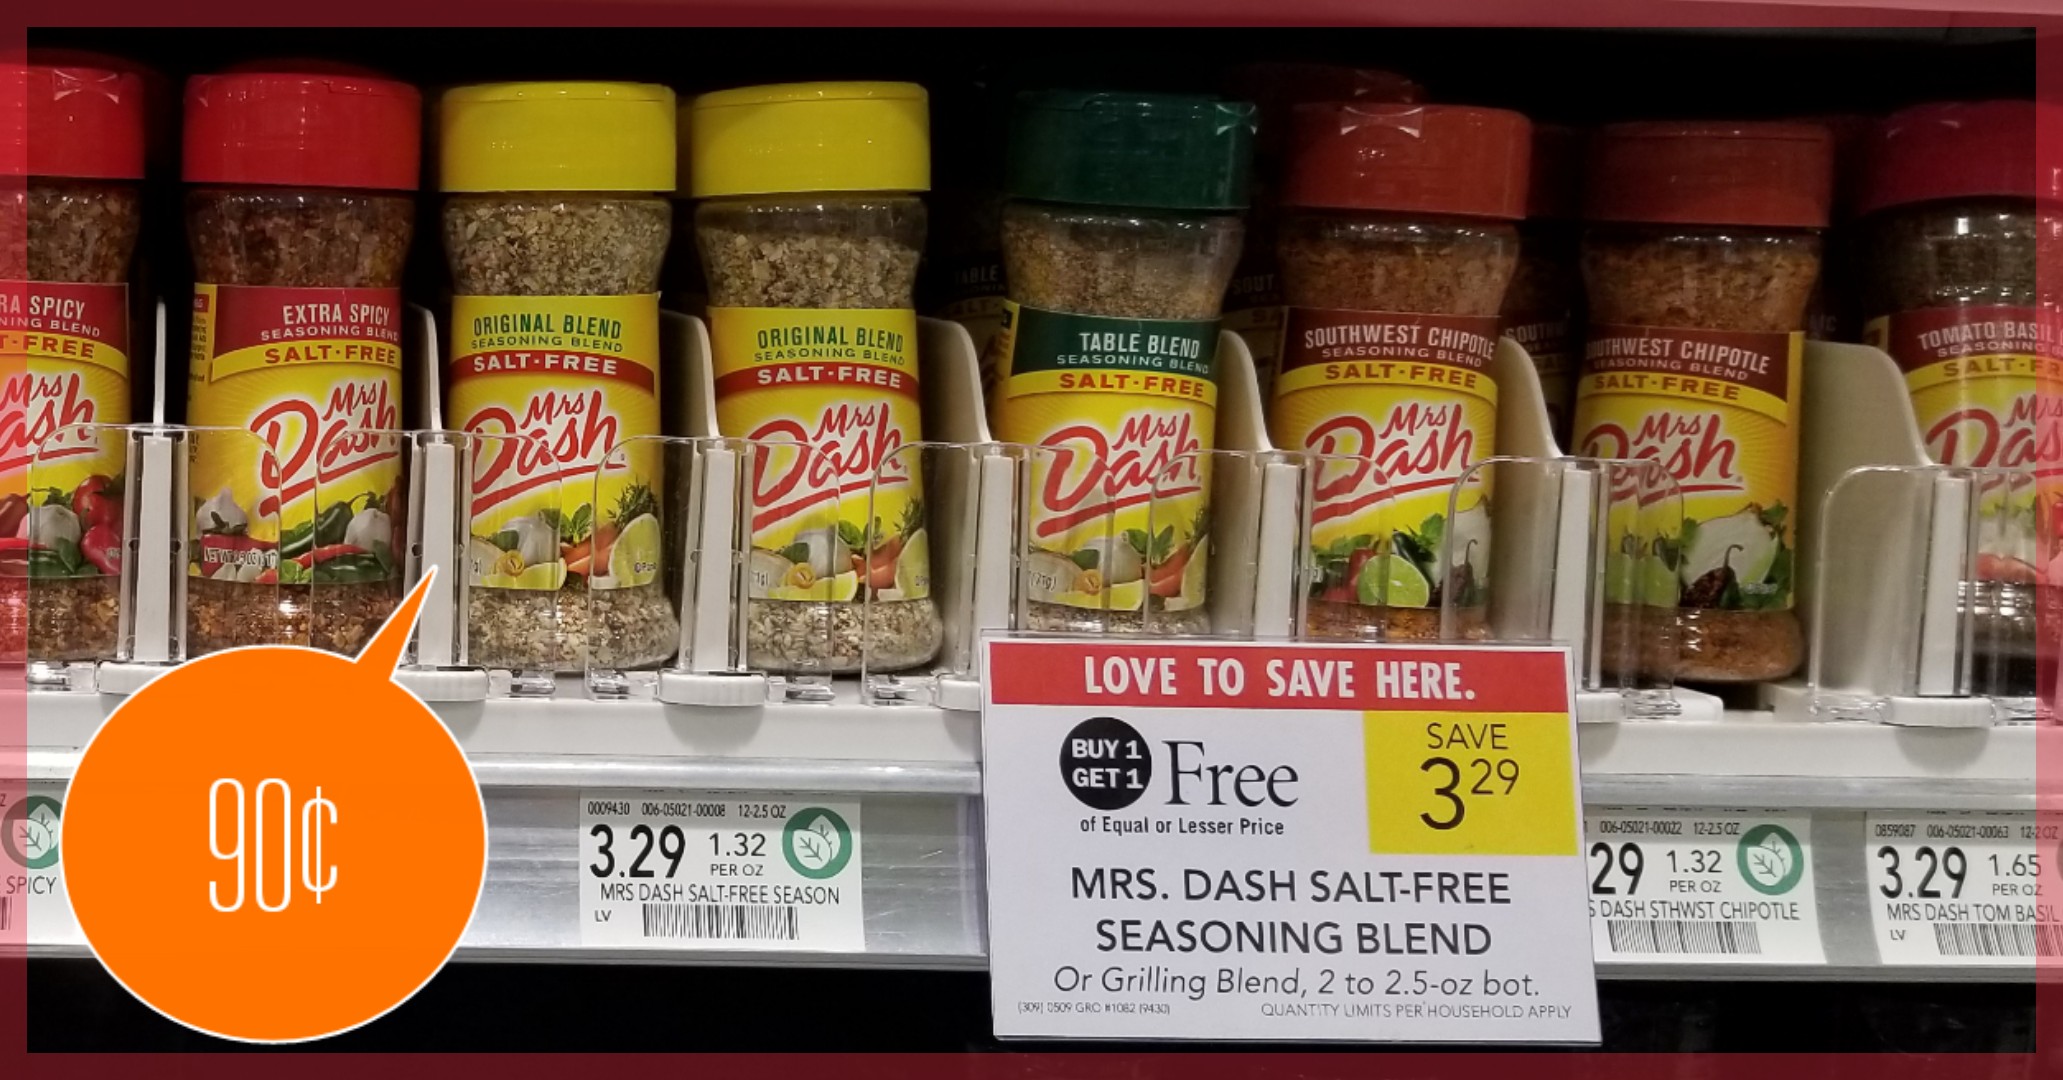 Mrs. Dash Salt-Free Seasoning – Only 90¢ each